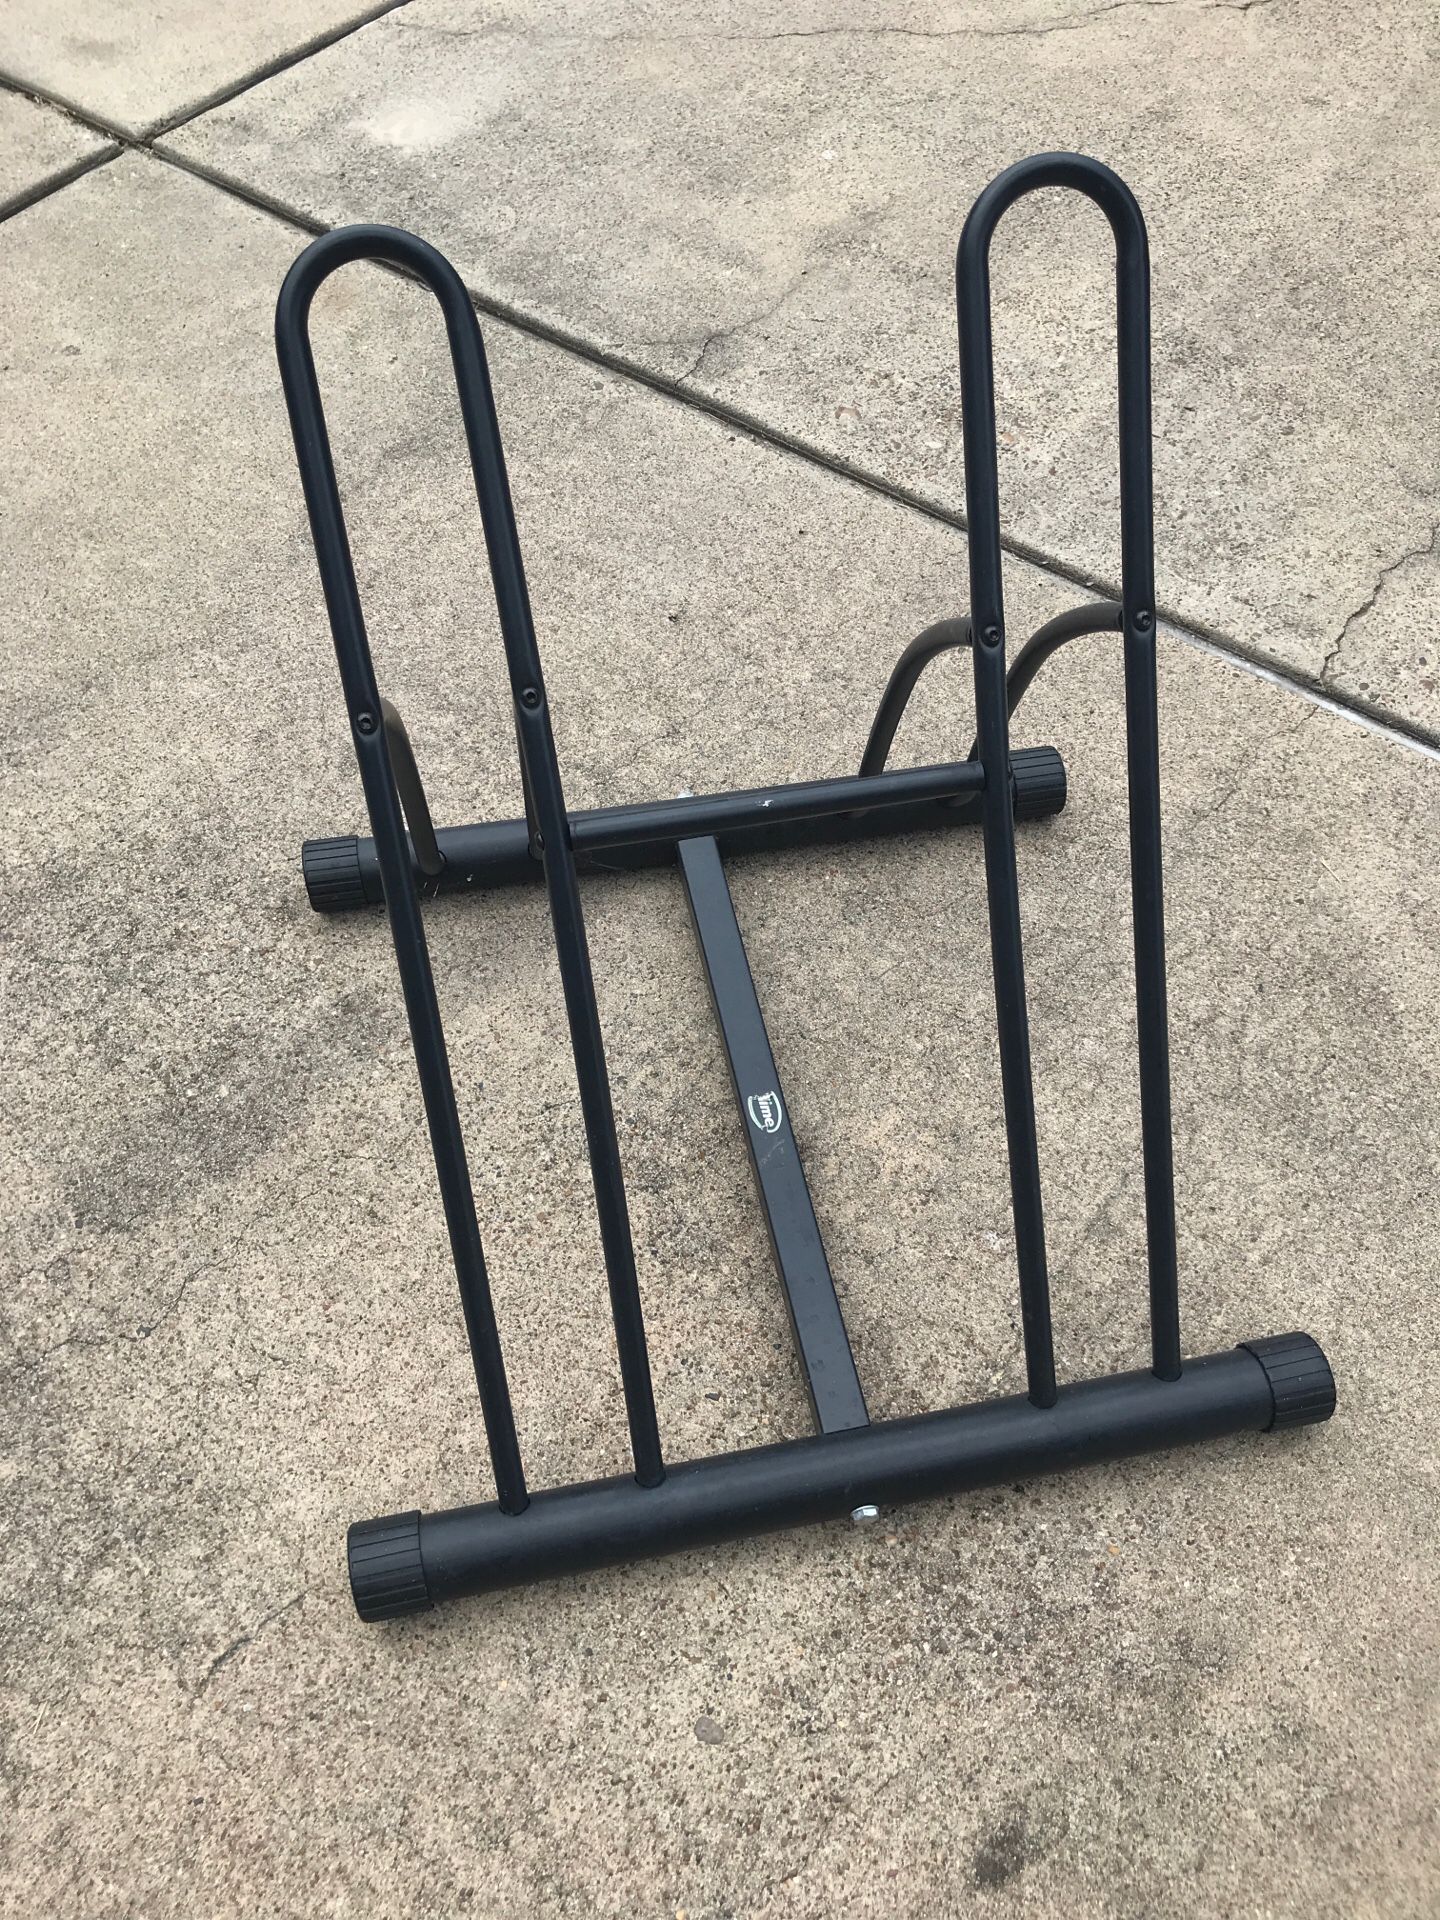 Bike rack for two bikes